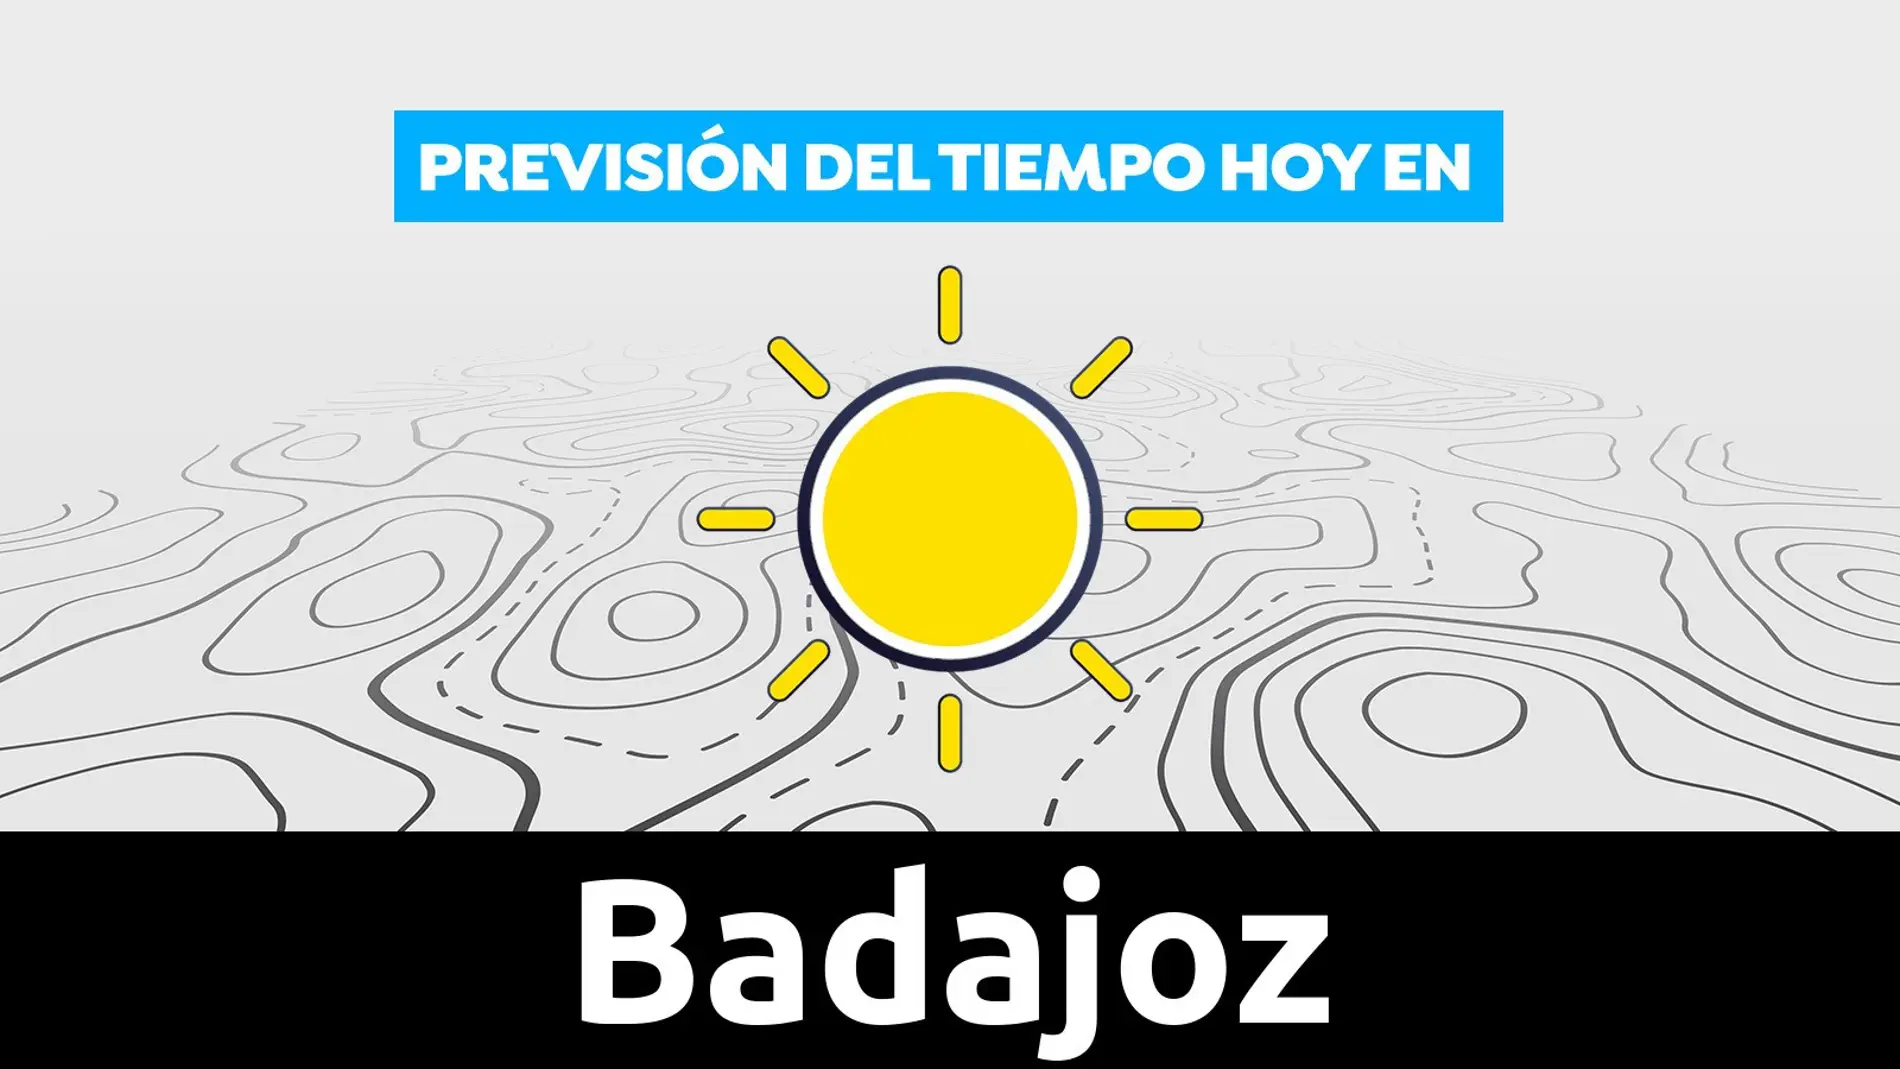 Previsión del tiempo hoy en Badajoz